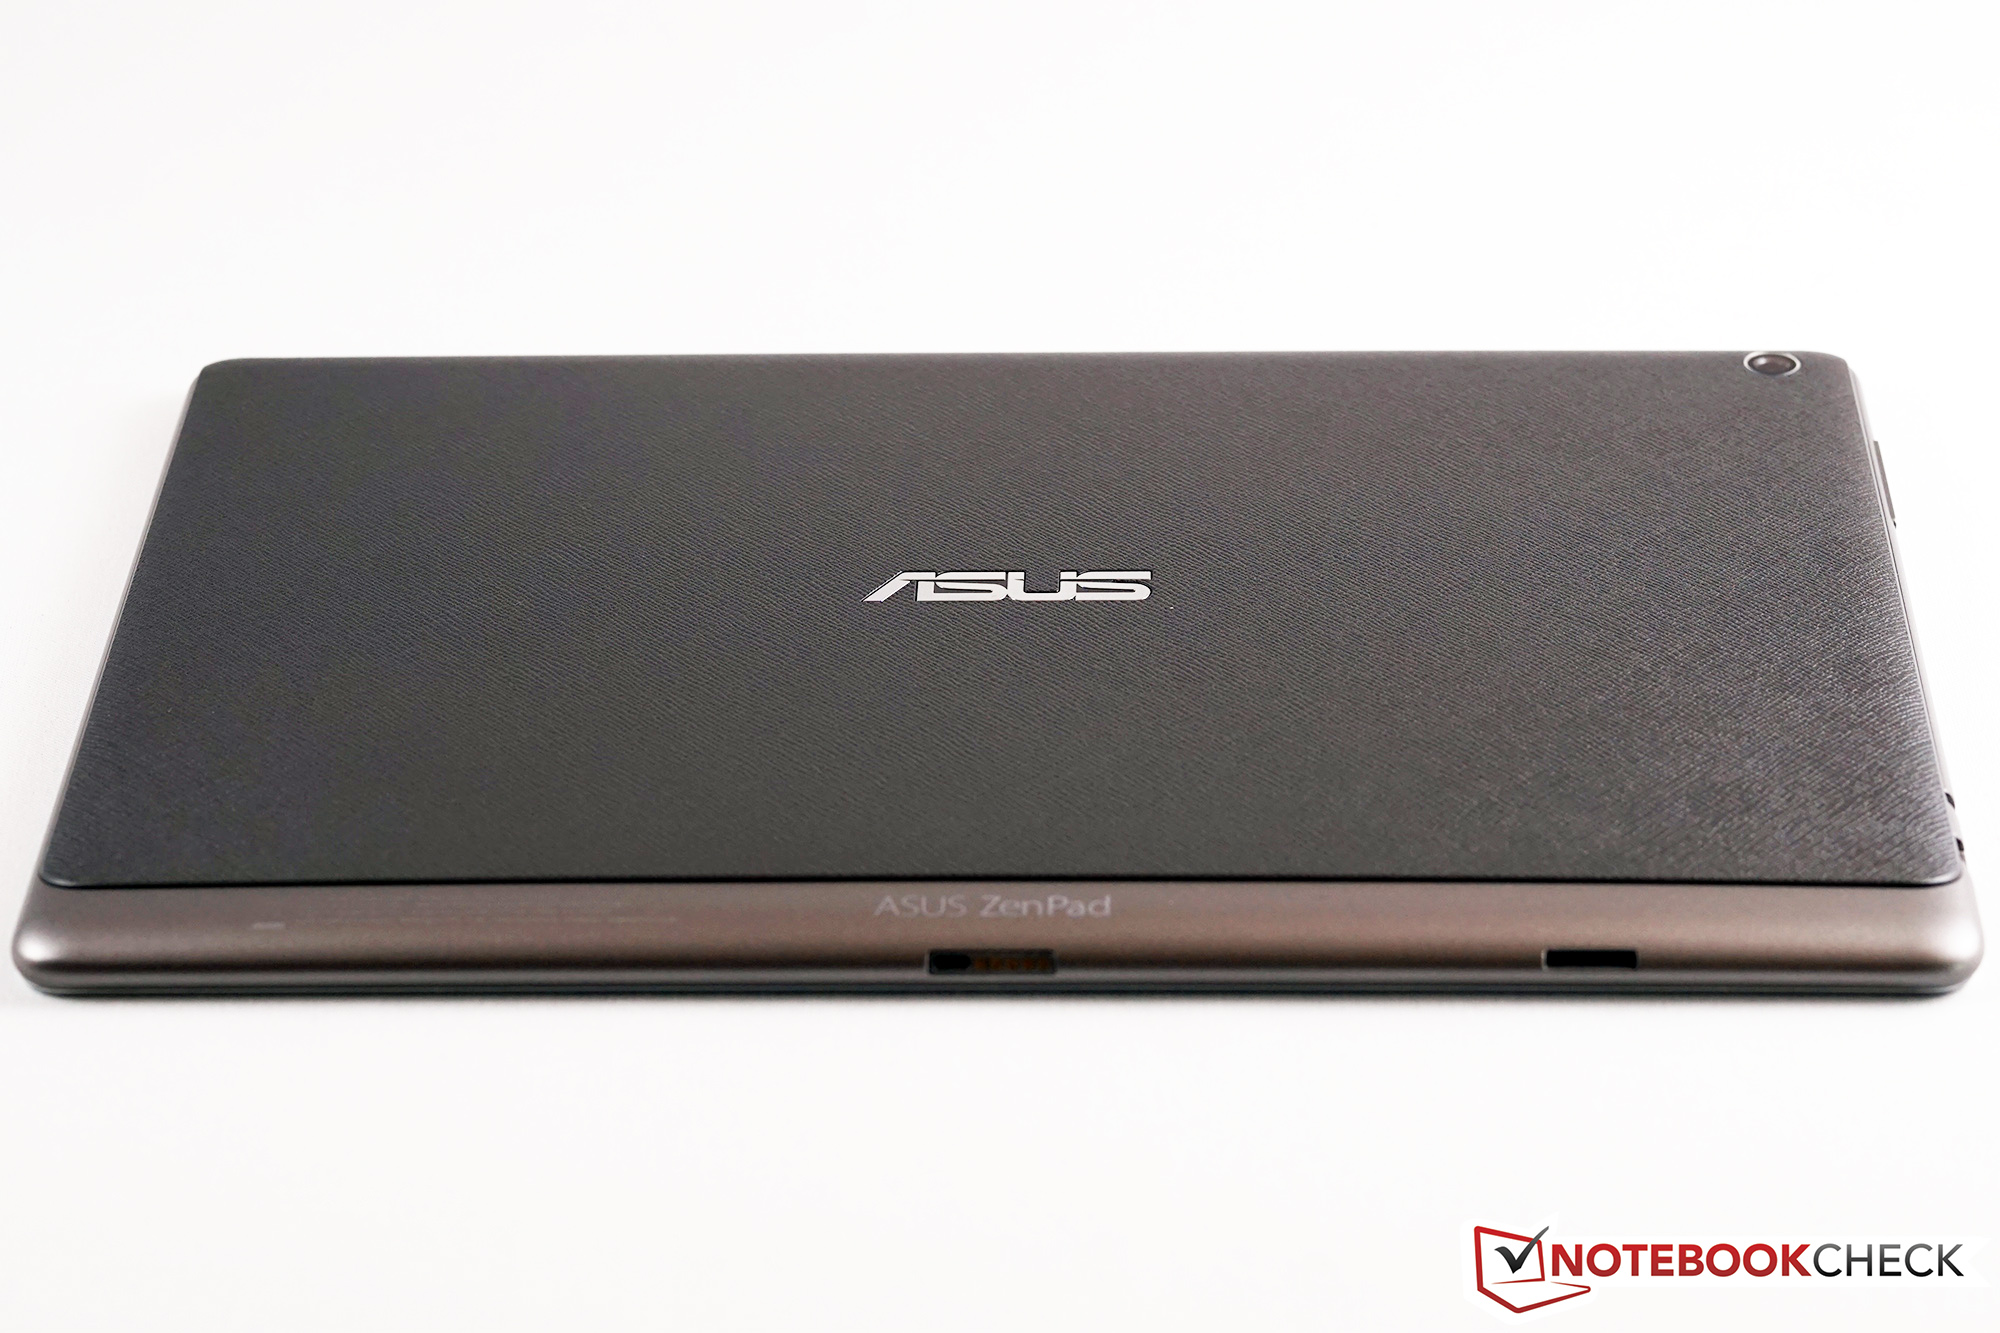 Asus Zenpad 100 Z300m 6a039a Tablet Review Reviews